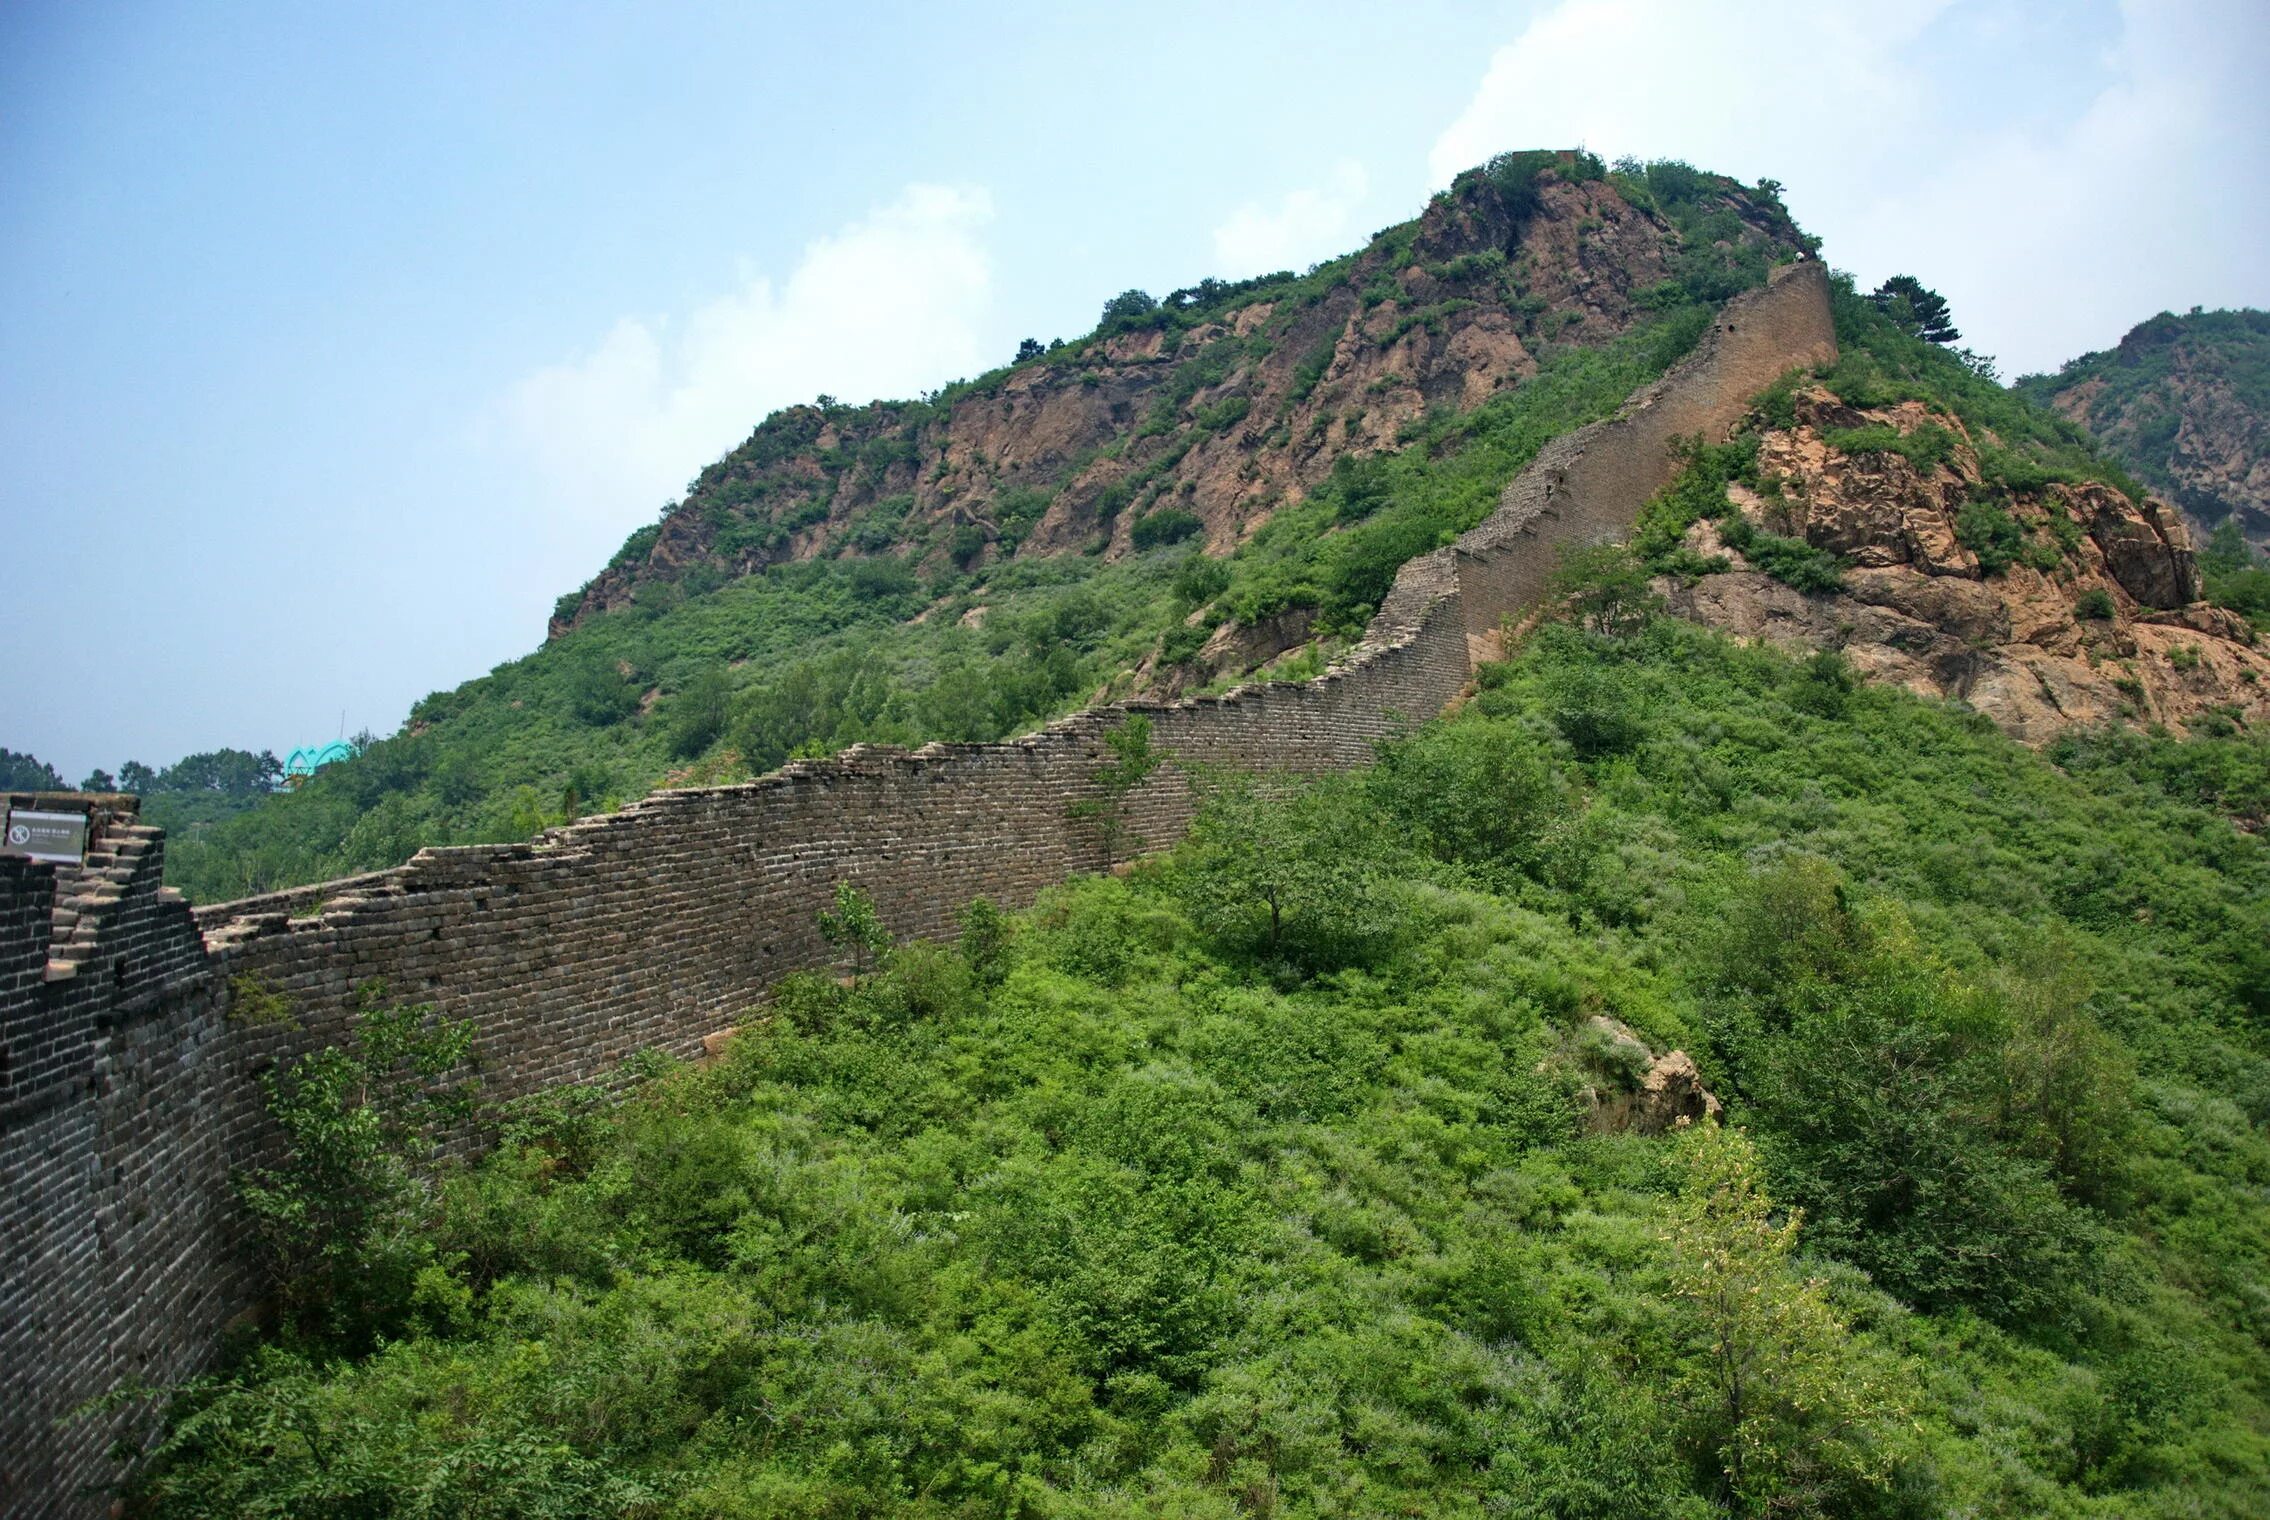 Края китайской стены. Великая китайская стена. Конец Великой китайской стены. Великая китайская стена возле Чжанцзякоу, Хэбэй. Китайская стена находка.